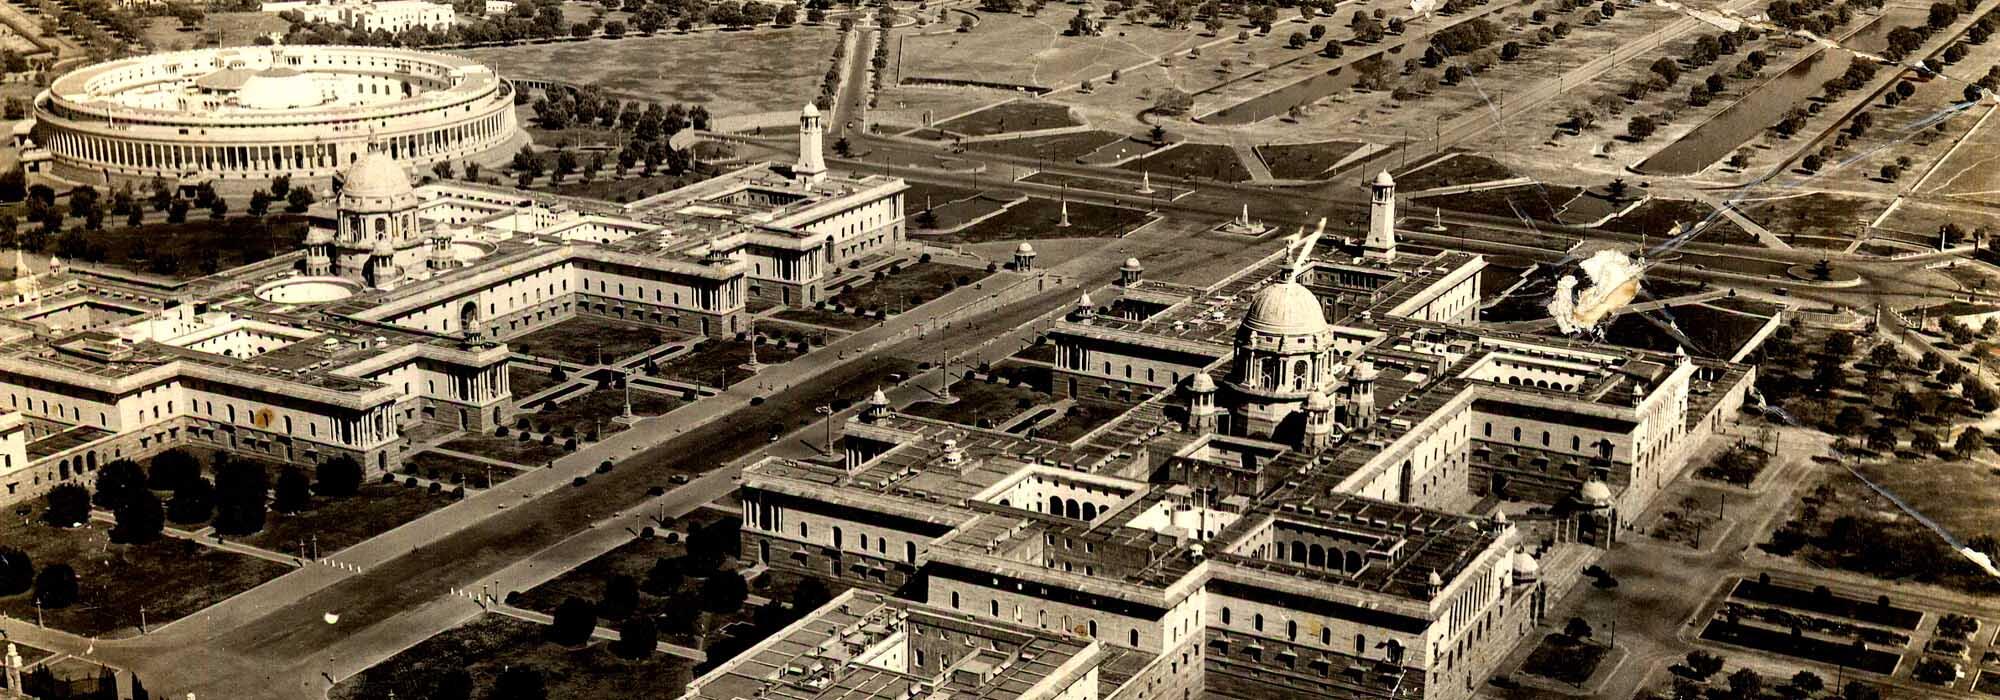 निर्माण के दौरान सचिवालय भवनों का दृश्य, नई दिल्ली